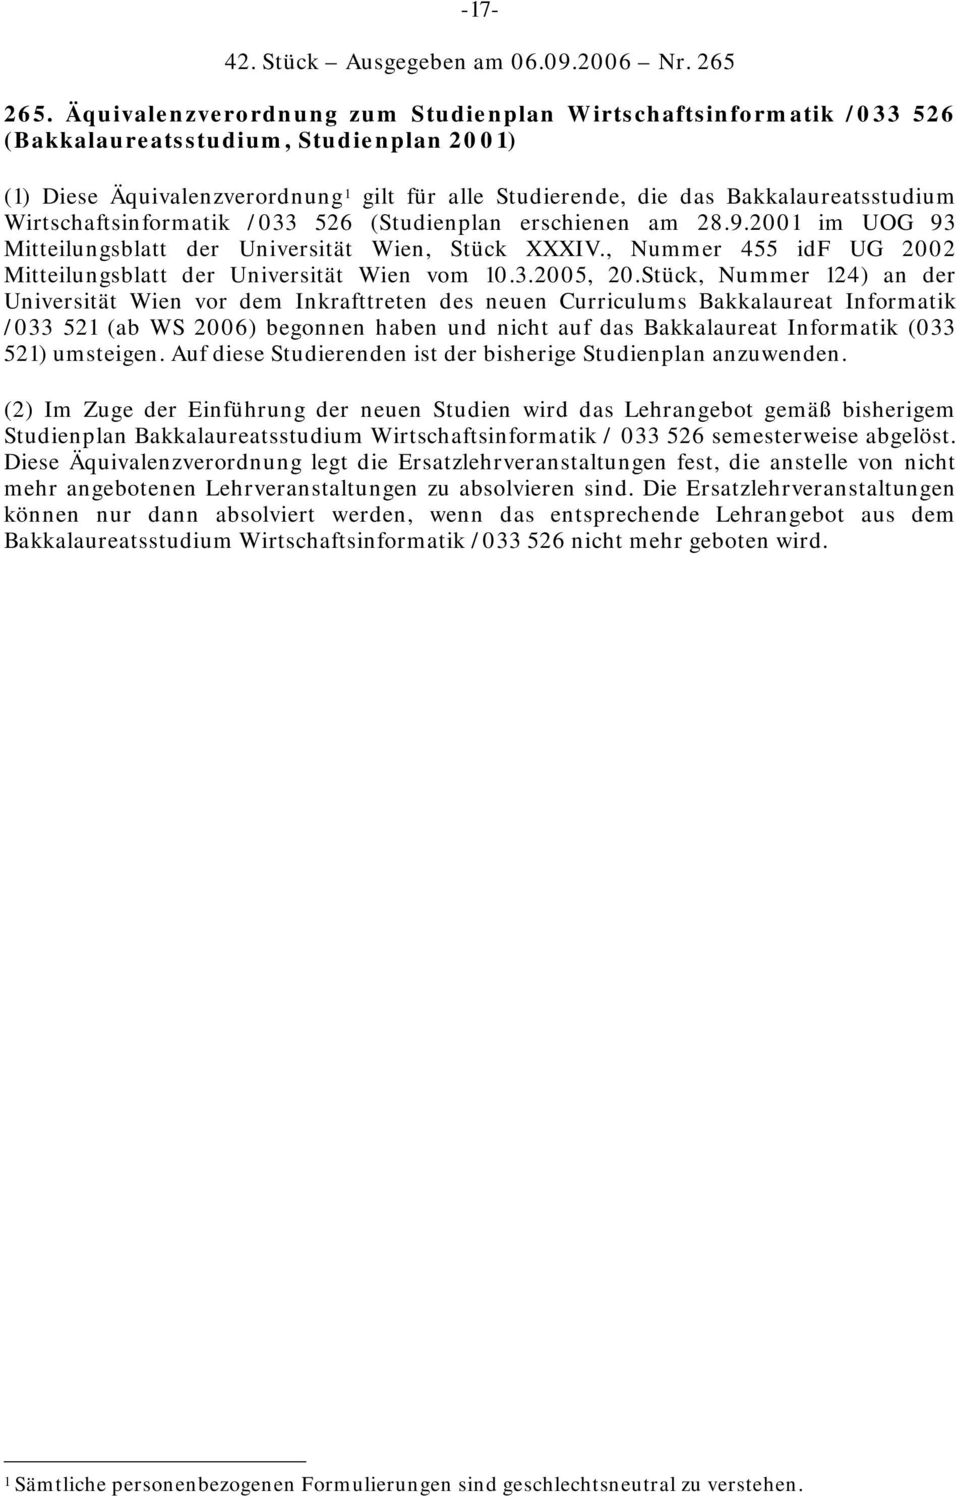 Wirtschaftsinformatik /033 526 (Studienplan erschienen am 28.9.2001 im UOG 93 Mitteilungsblatt der Universität Wien, Stück XXXIV., Nummer 455 idf UG 2002 Mitteilungsblatt der Universität Wien vom 10.